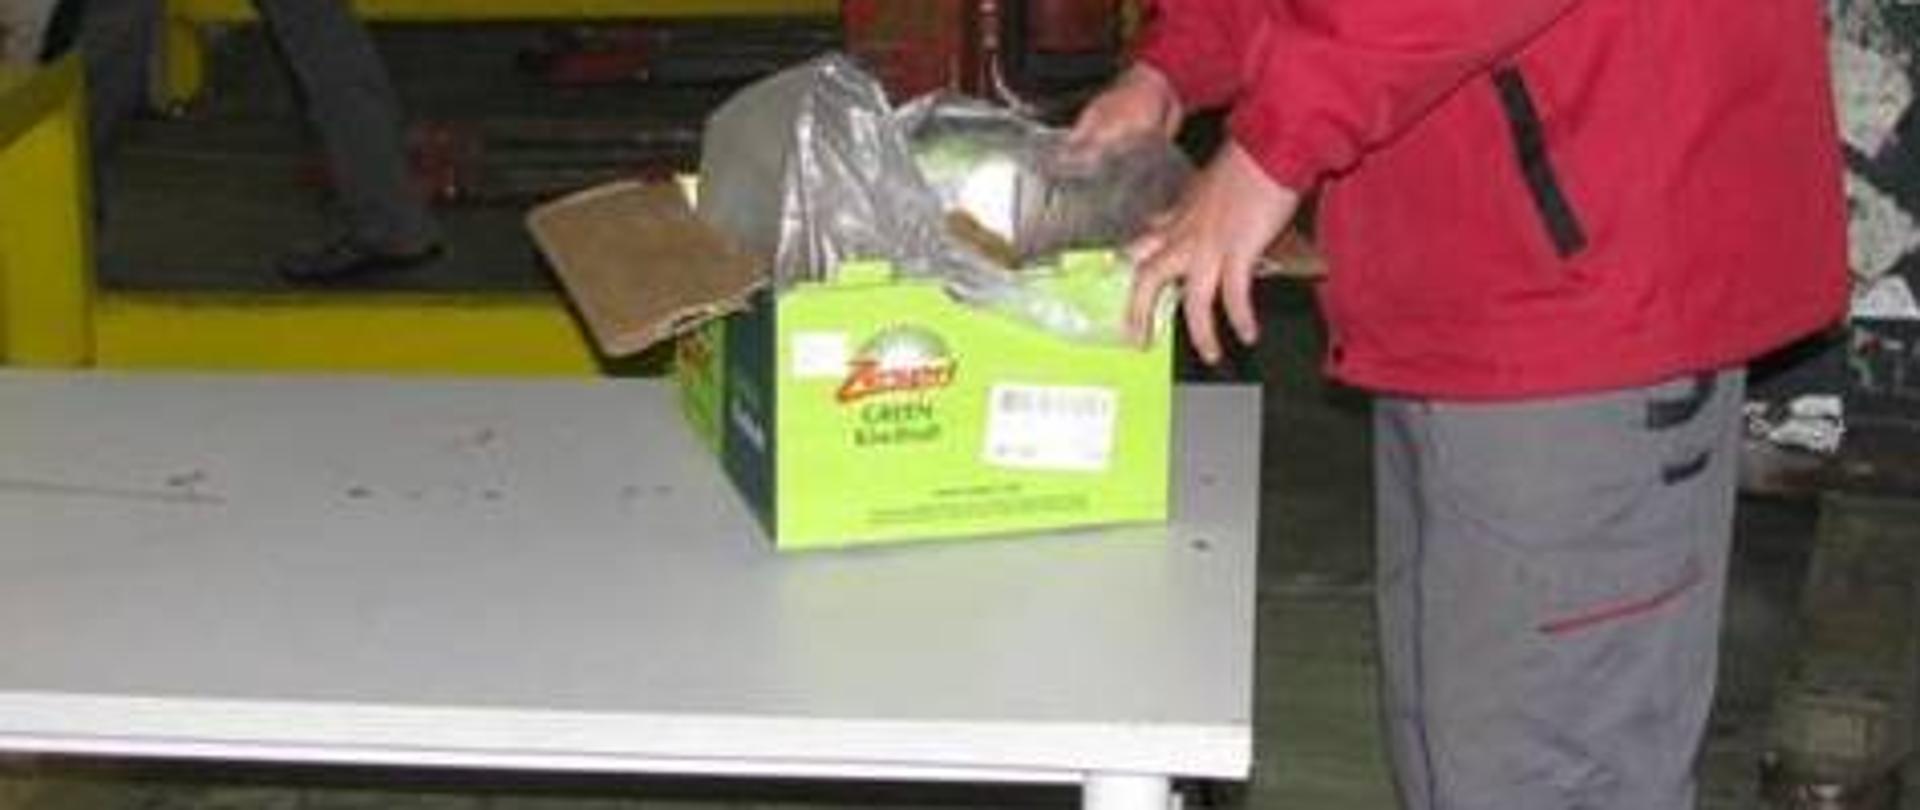 zdjęcie przedstawia fragment postaci kontrolera sprawdzającego jakość owoców znajdujących się w pudle kartonowym na stole inspekcyjnym